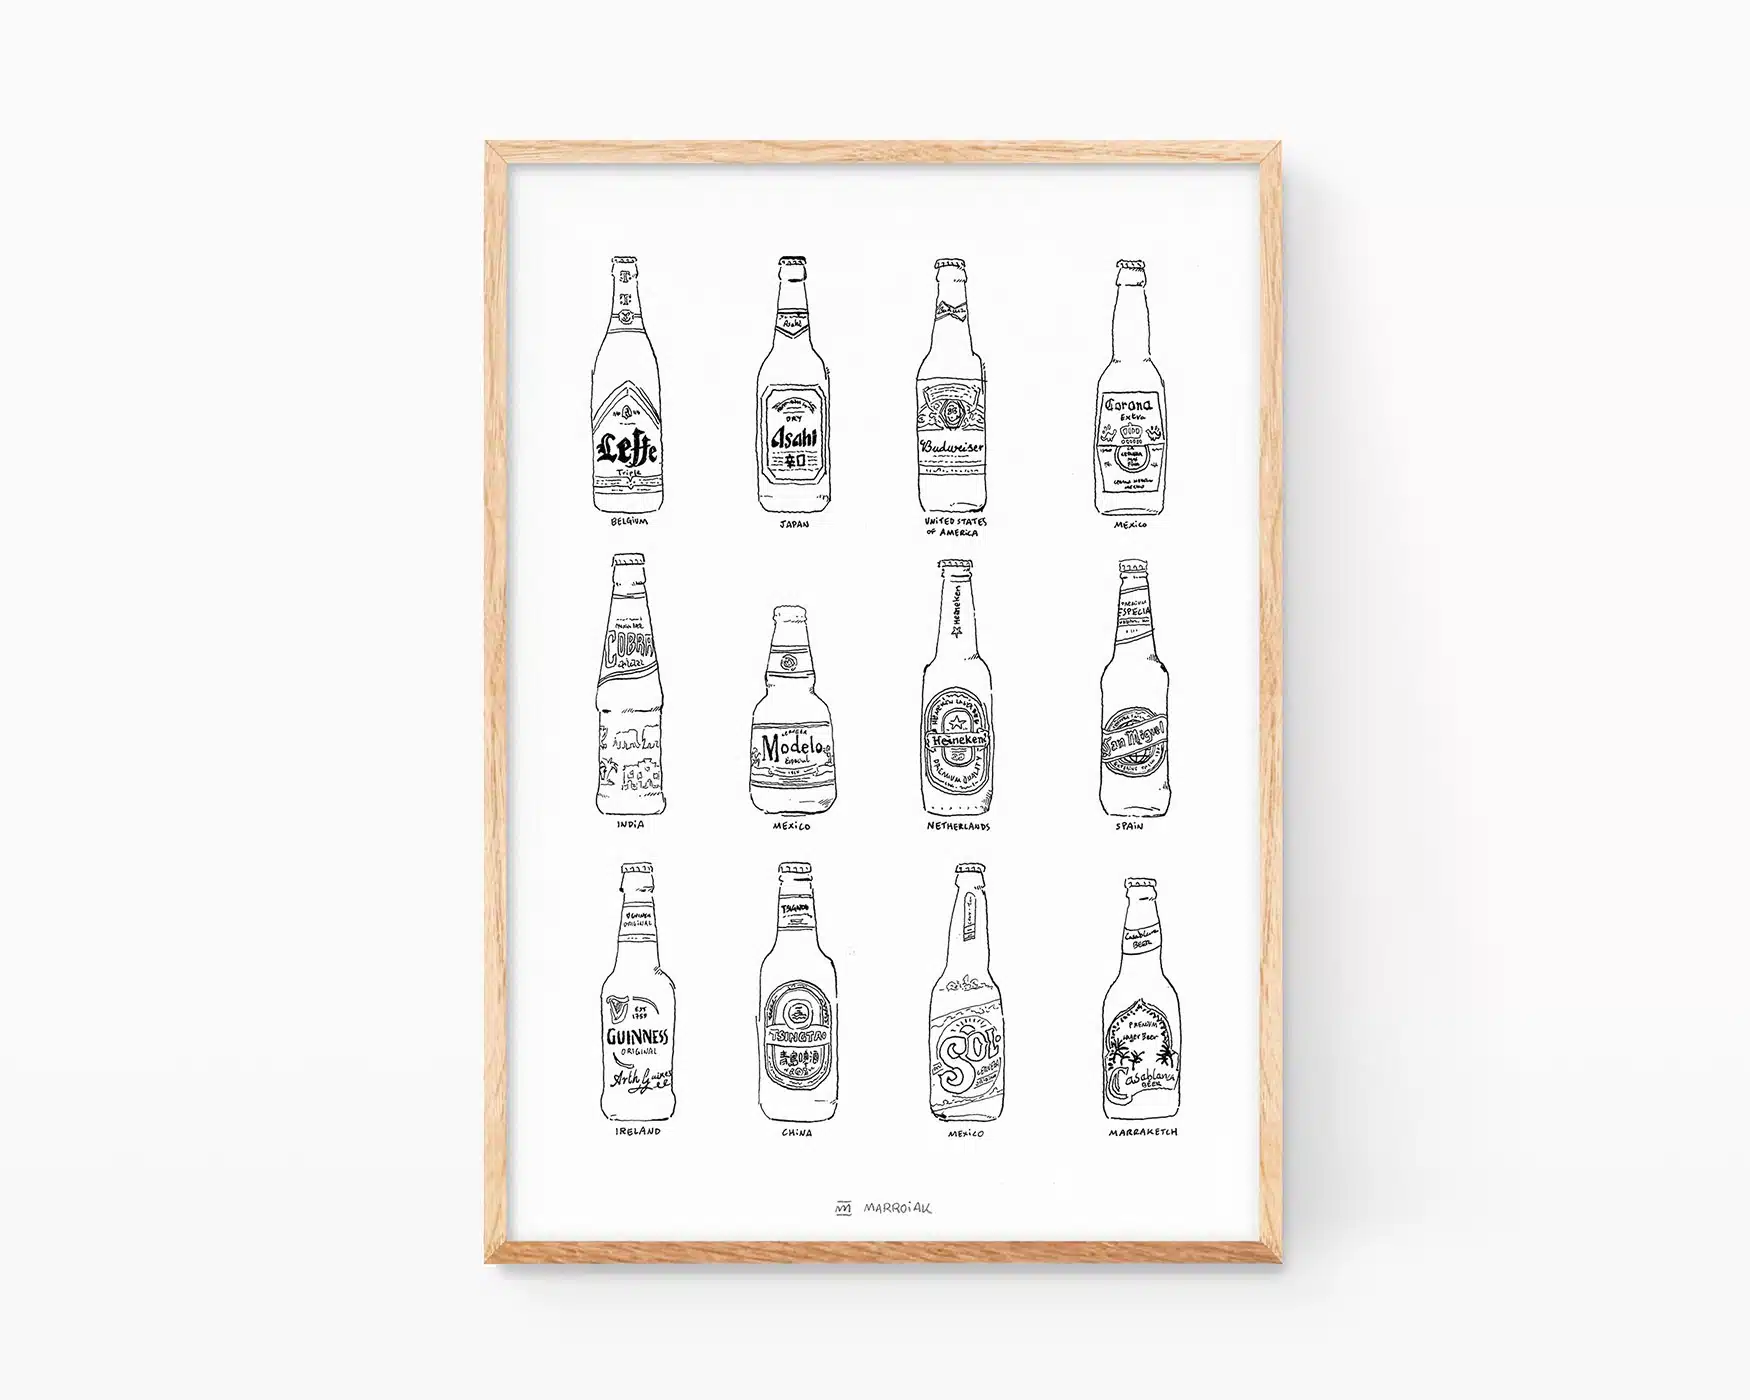 Lámina decorativa para cocinas con una ilustración de diferentes cervezas del mundo. Cobra, Heineken, tsingtao, coronita, san miguel, leffe, cobra, casa blanca, guiness